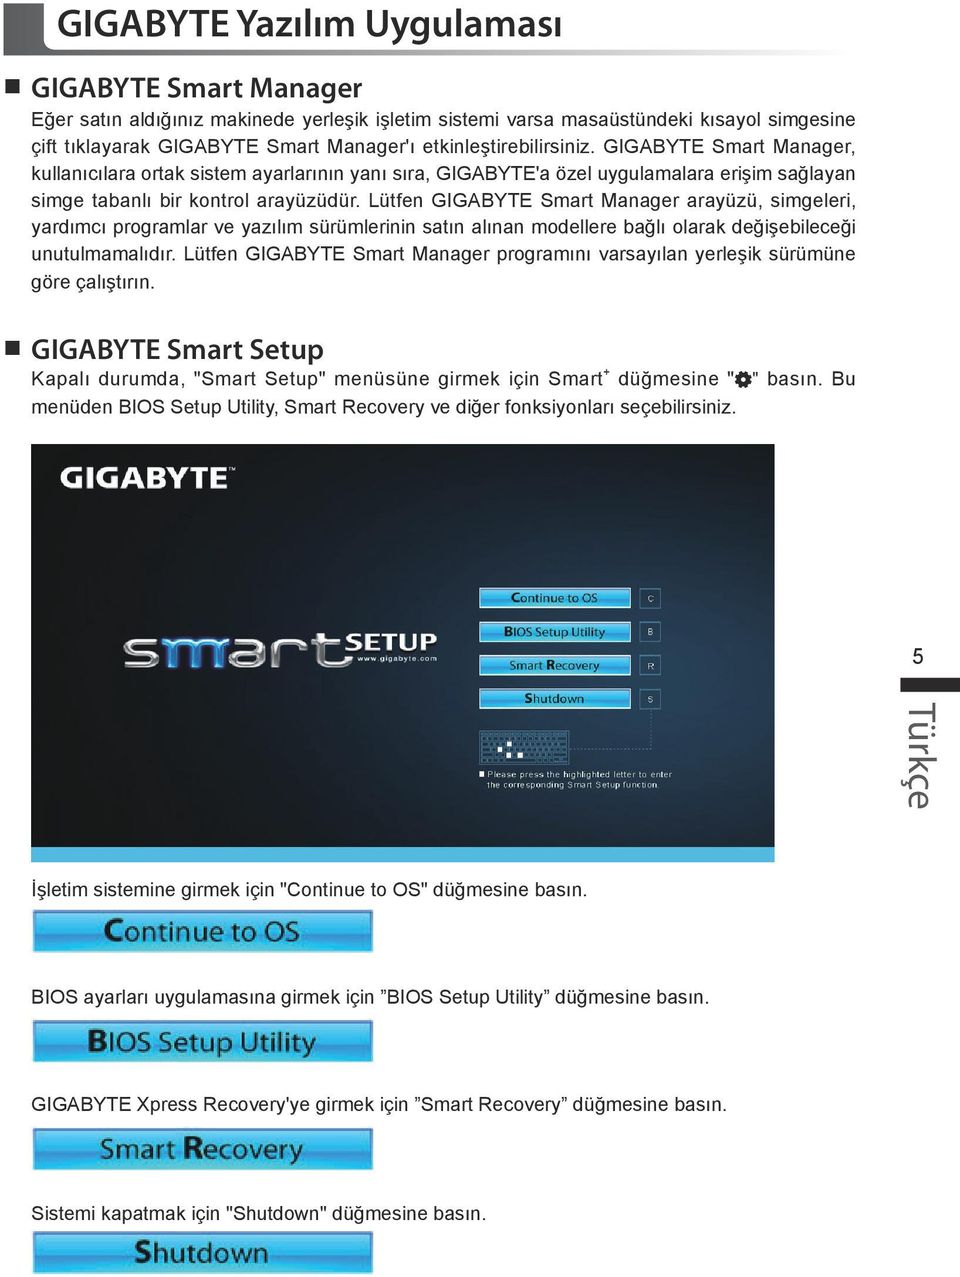 Lütfen GIGABYTE Smart Manager arayüzü, simgeleri, yardımcı programlar ve yazılım sürümlerinin satın alınan modellere bağlı olarak değişebileceği unutulmamalıdır.